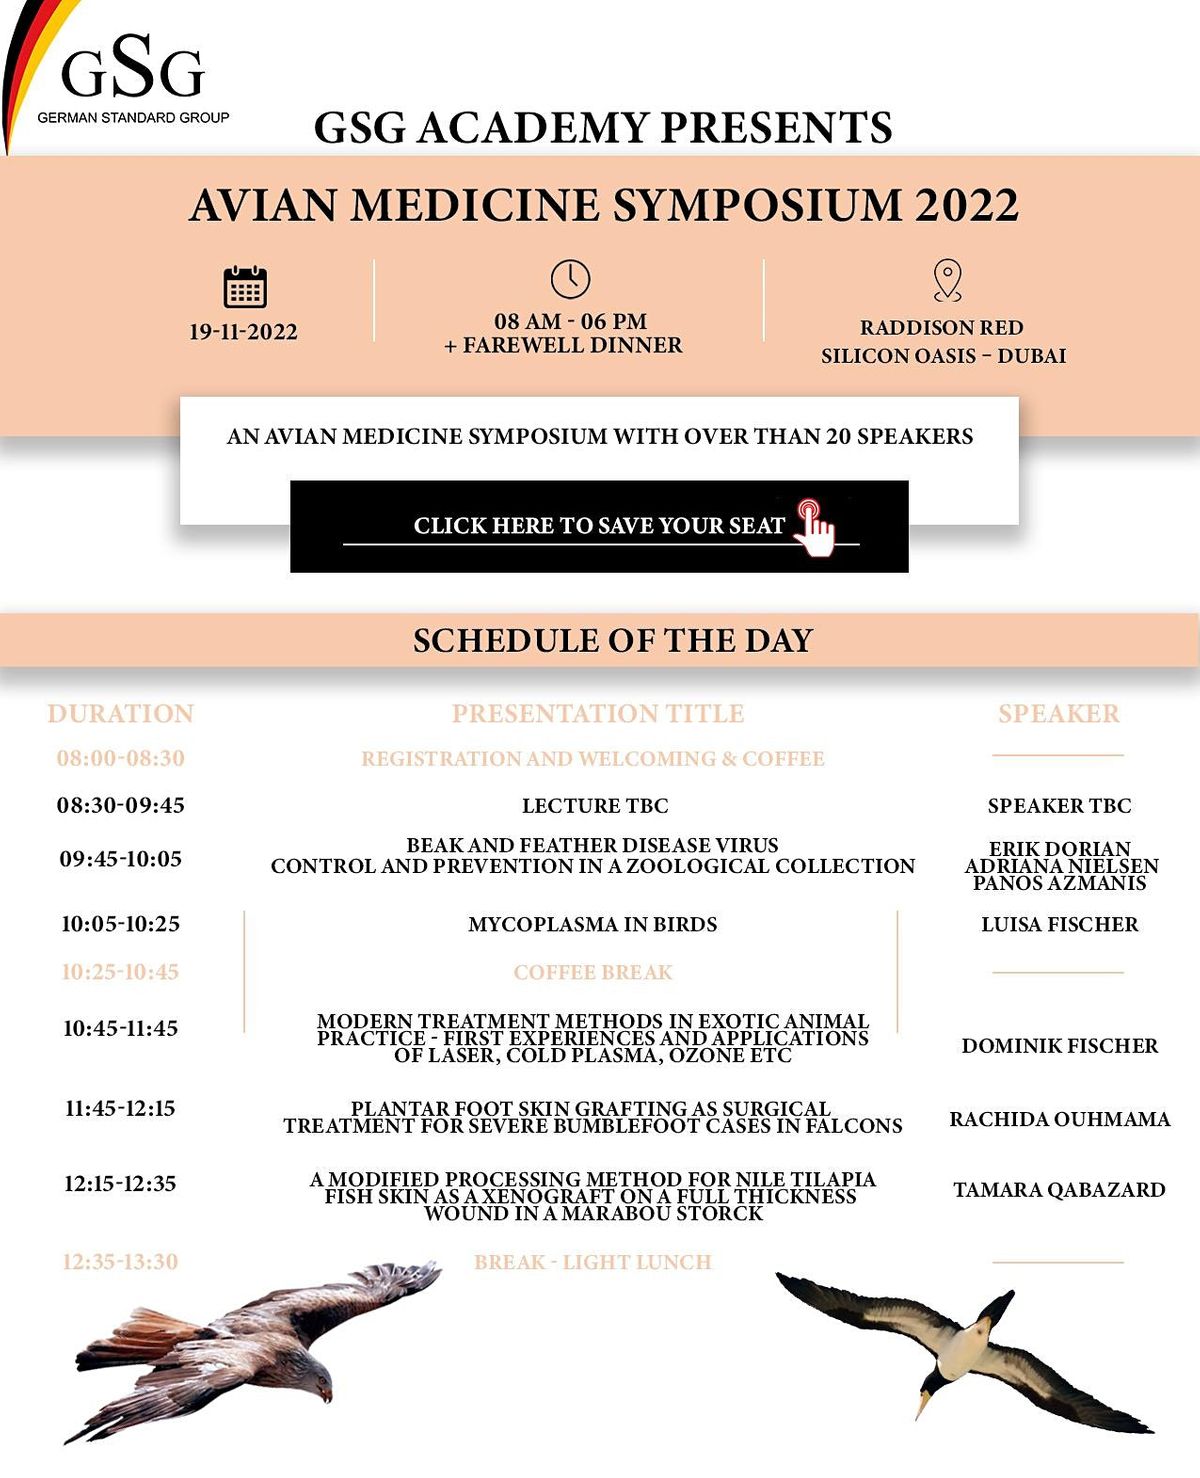 Avian MEDICINE Symposium 2022